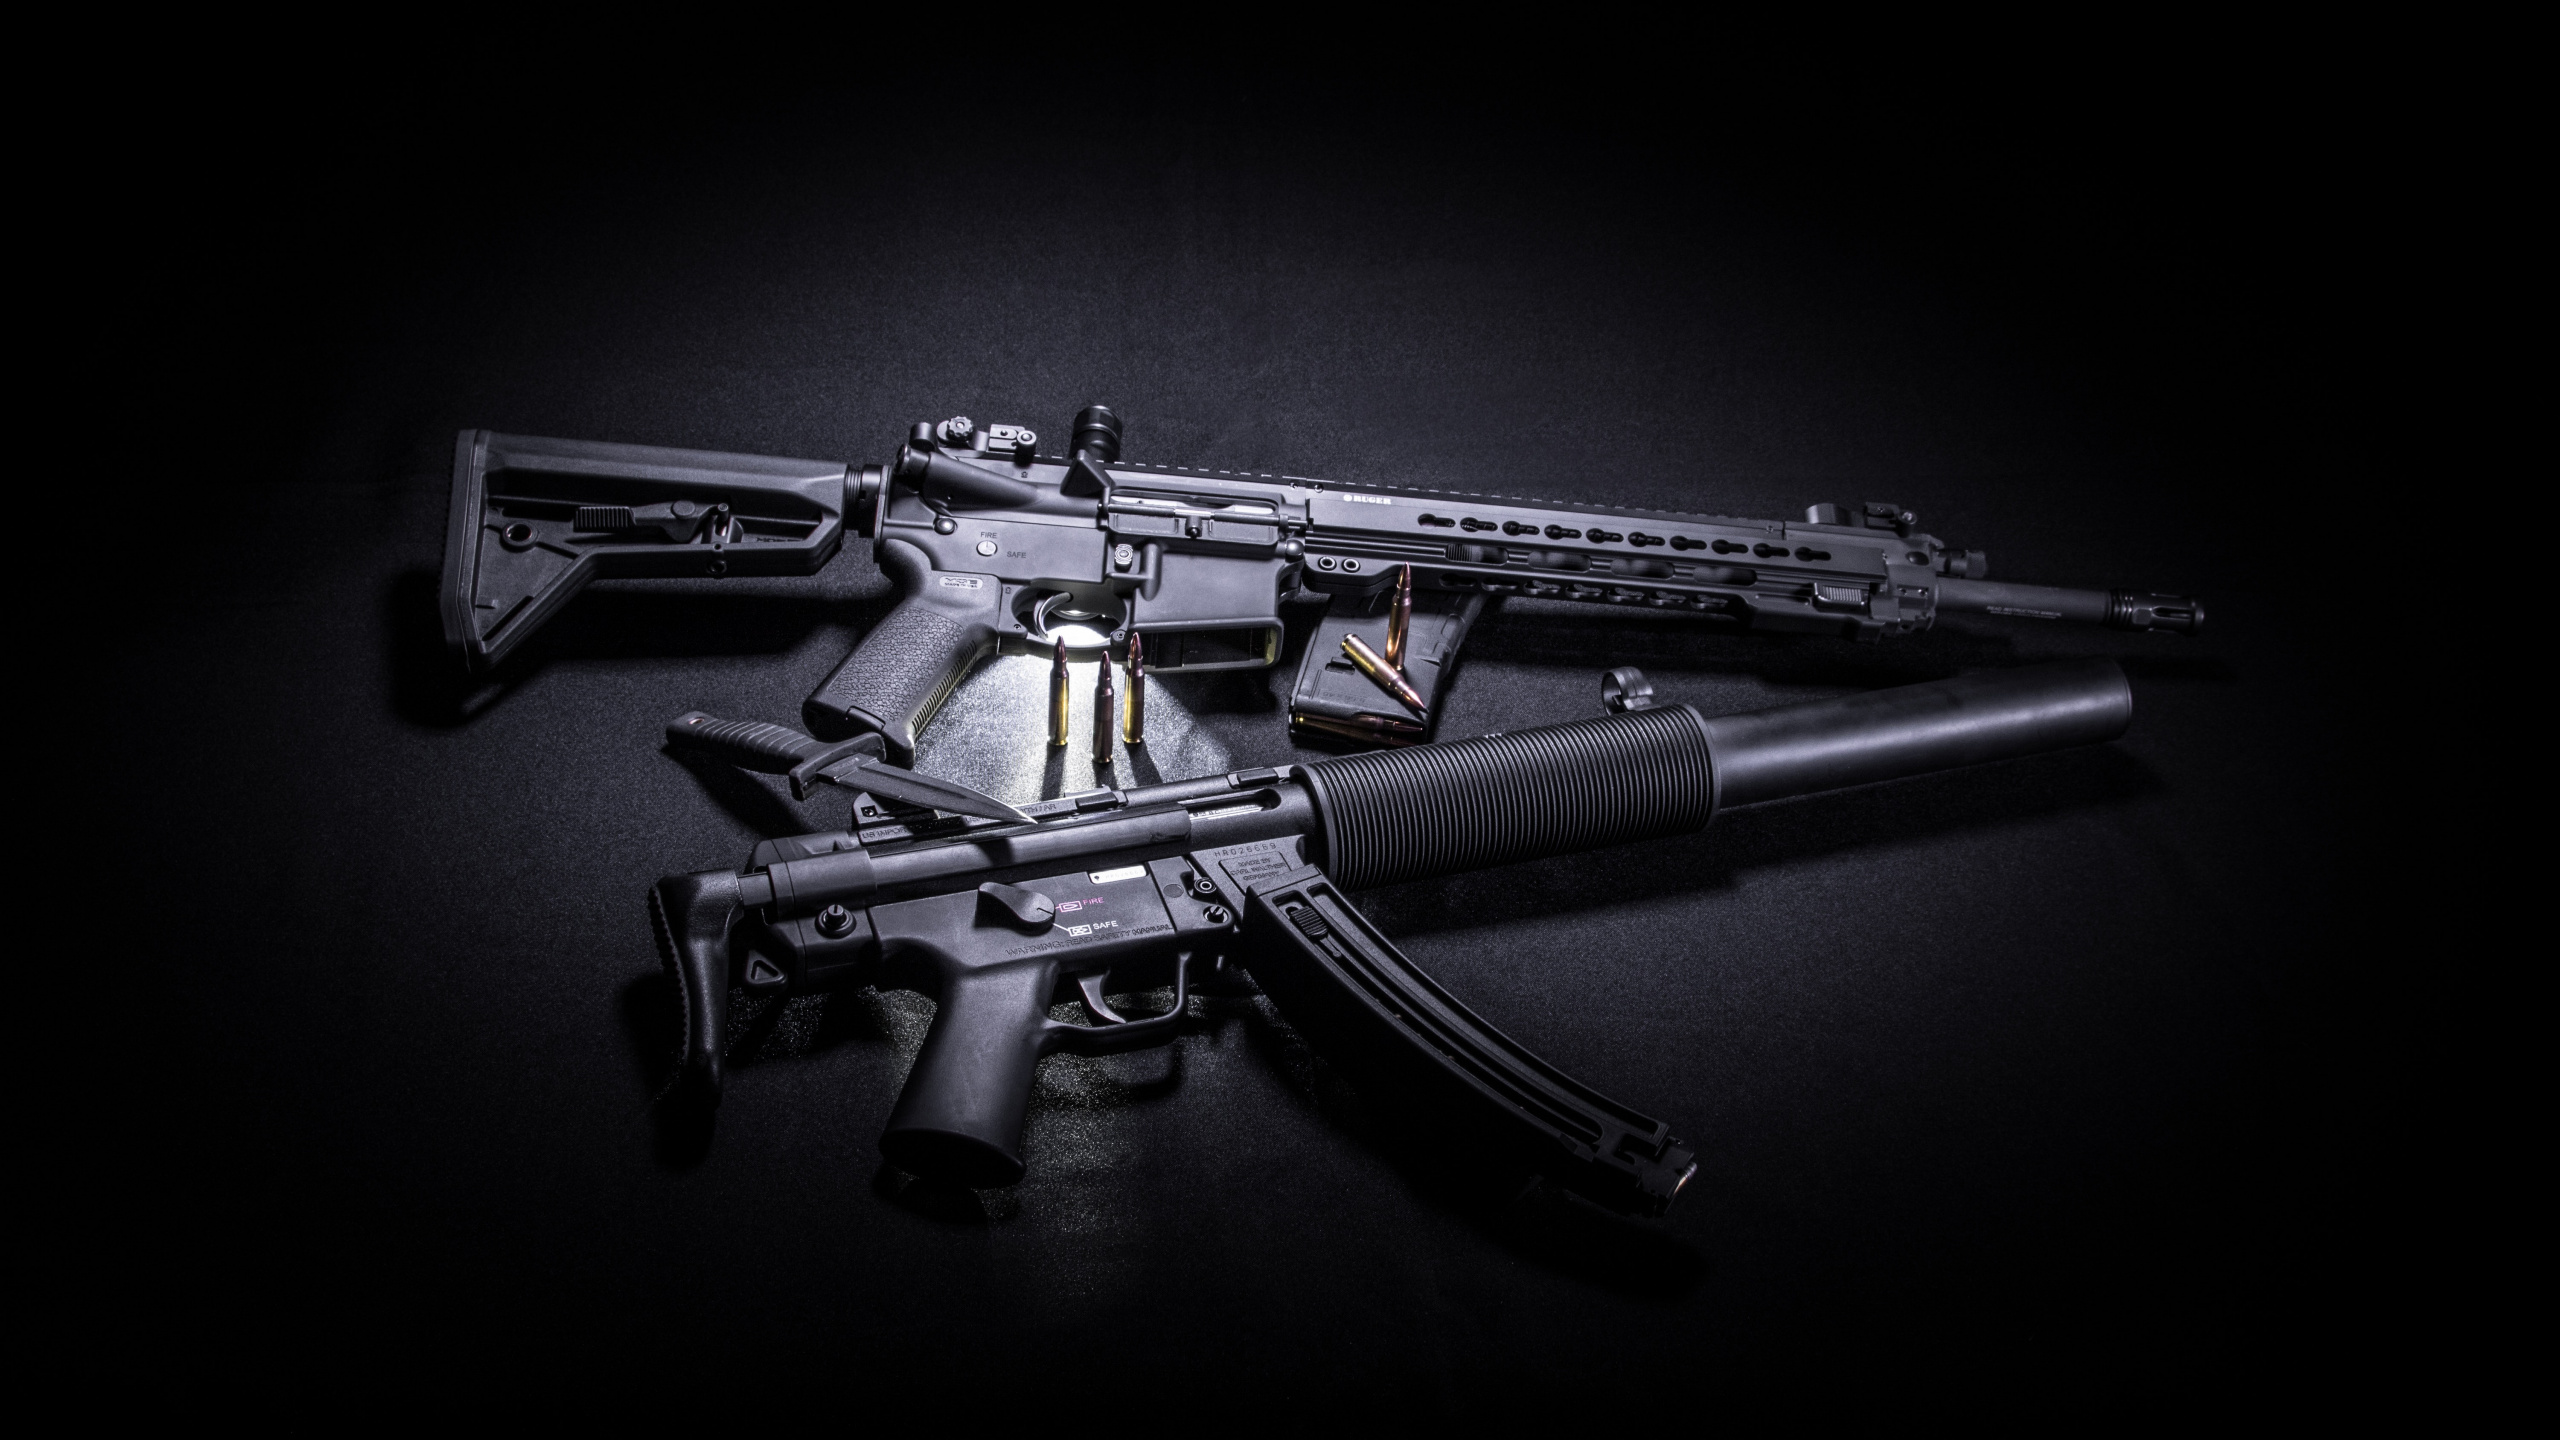 Gun, Firearm, Assault Rifle, Trigger, Gun Barrel. Wallpaper in 2560x1440 Resolution